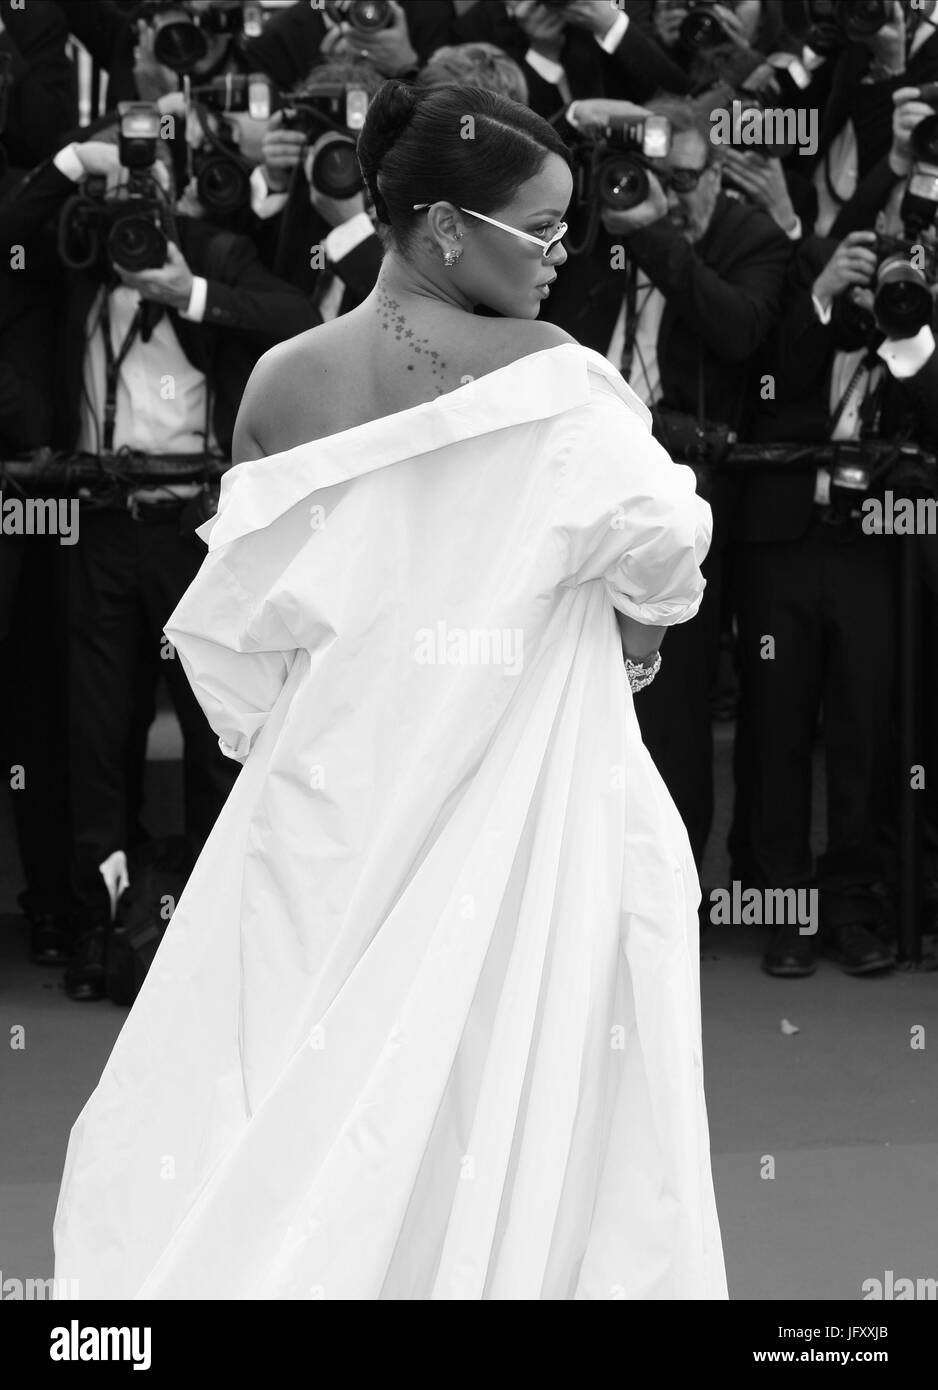 Rihanna ( imagen alterada digitalmente a monocromo ) atiende el cribado Okja durante la 70ª edición del Festival de Cannes anual en el Palais des Festivals el 19 de mayo de 2017 en Cannes, Francia. Foto de stock